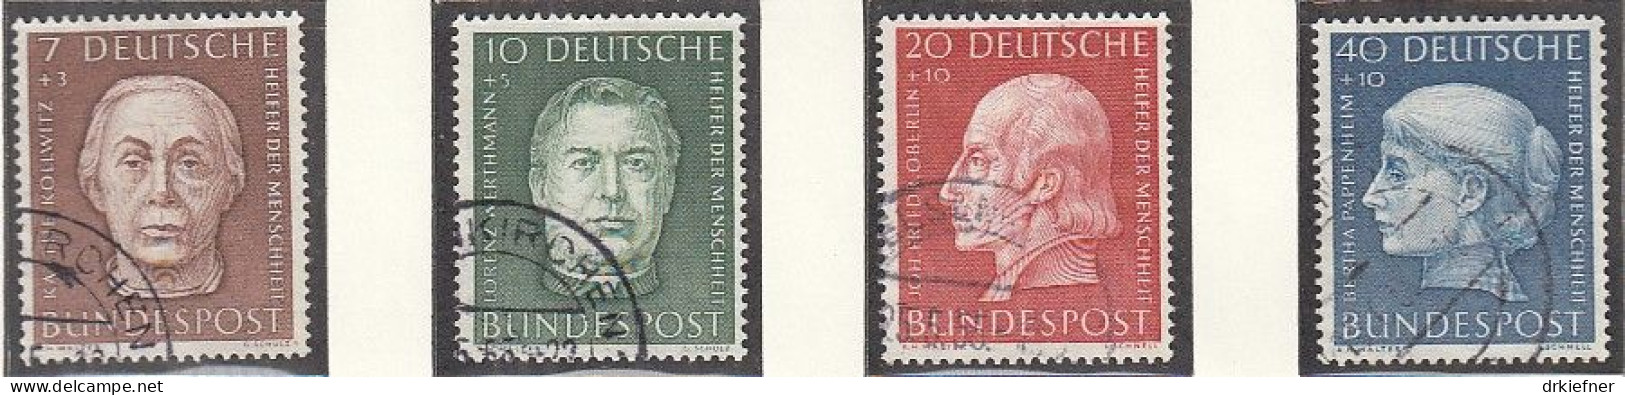 BRD 200-203, Gestempelt, Wohlfahrt: Helfer Der Menschheit, 1954 - Oblitérés